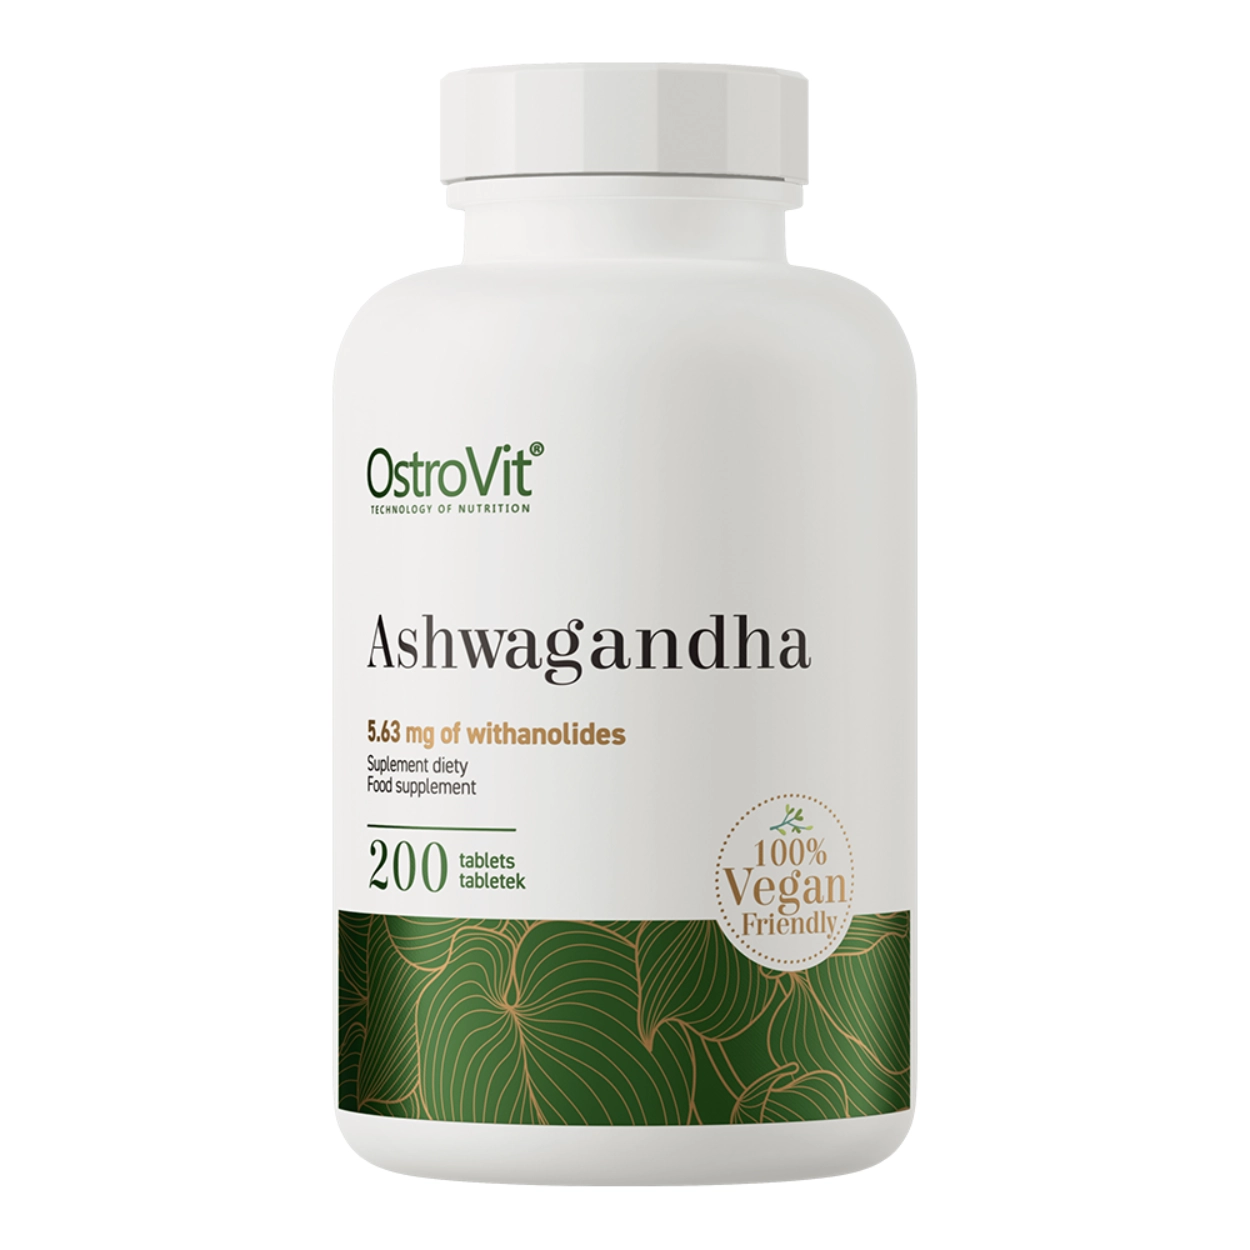 Białe opakowanie suplementu diety OstroVit Ashwagandha z zielonymi elementami graficznymi, 200 tabletek, oznaczenie "100% Vegan Friendly"